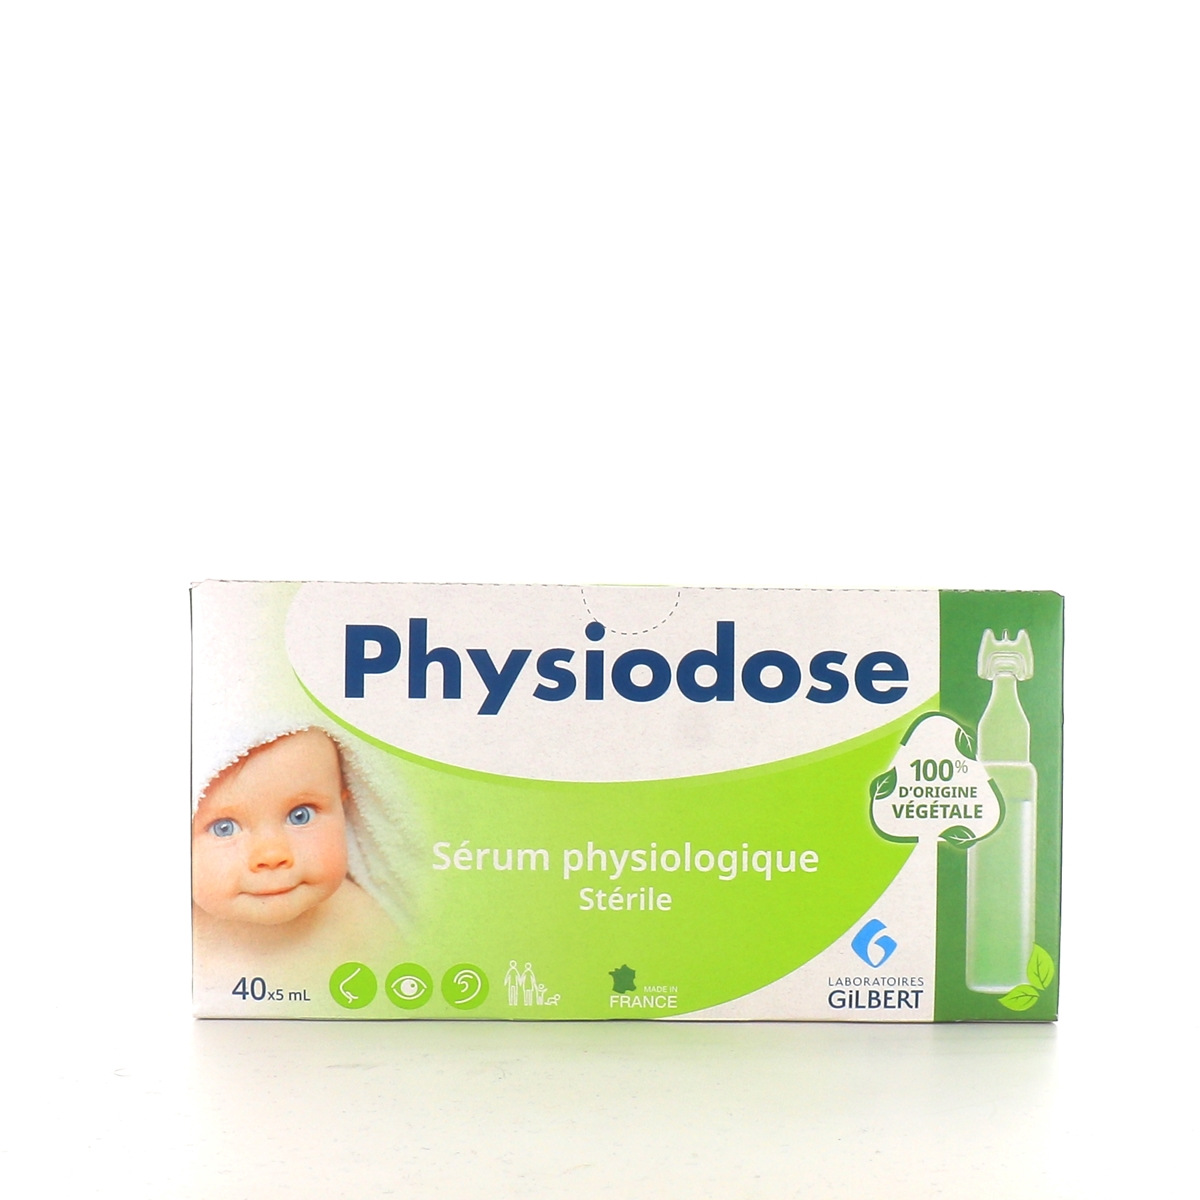 Physiodose : serum physiologique yeux, nez, oreille du bébé et de l'adulte